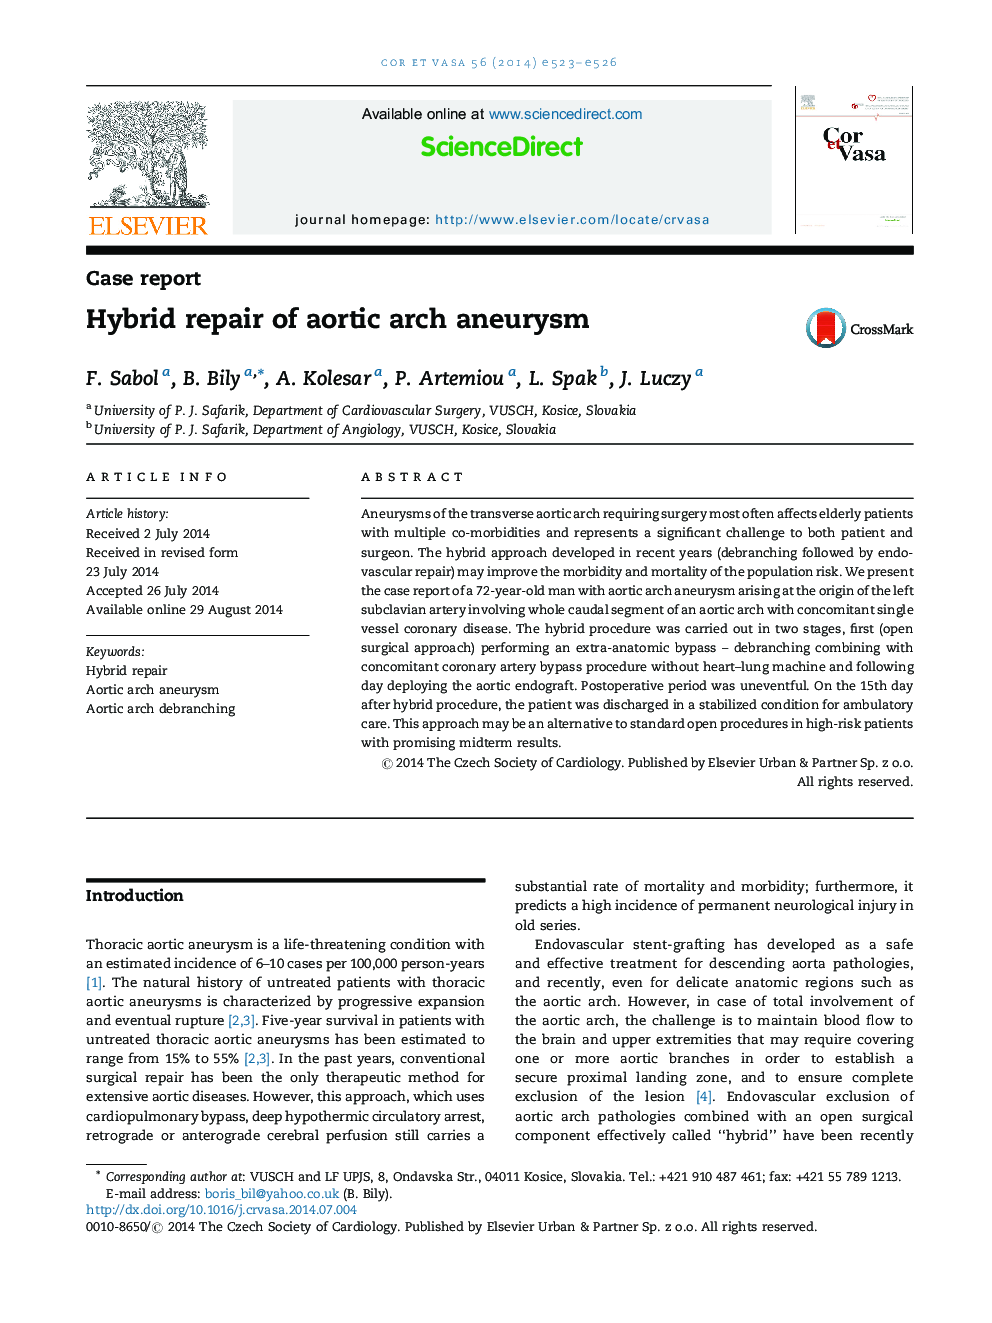 Hybrid repair of aortic arch aneurysm